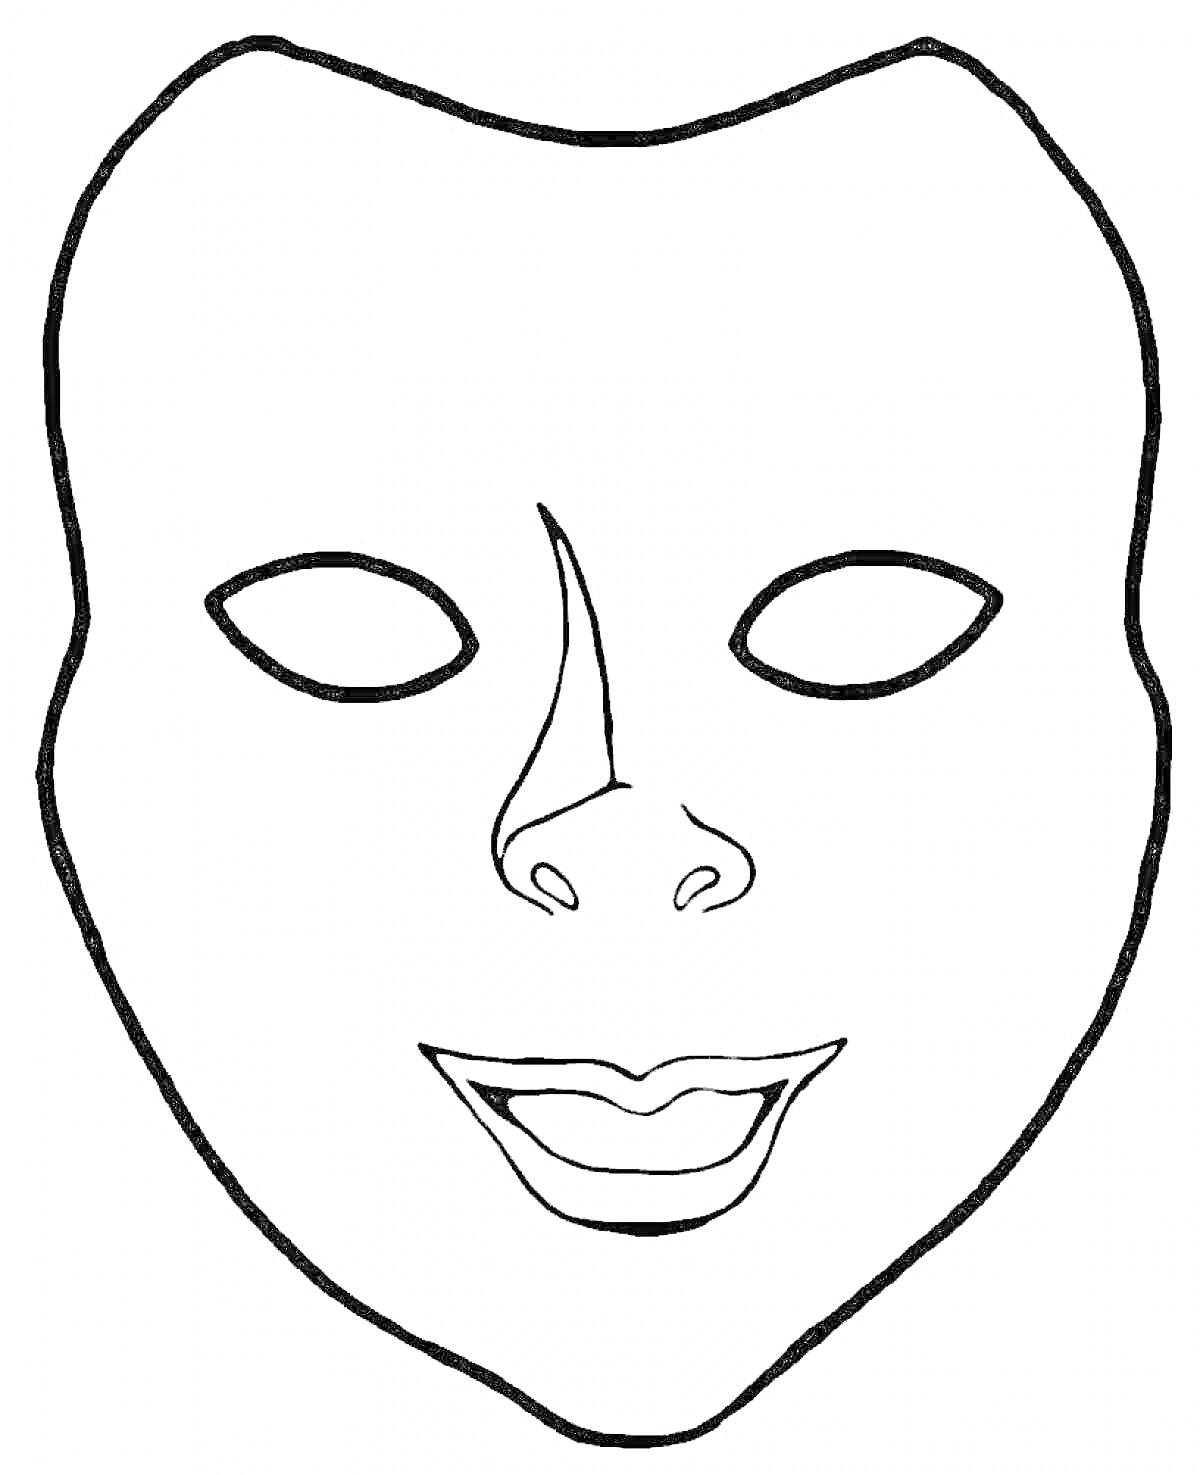 Раскраска Маска для лица с вырезами для глаз, носа и рта